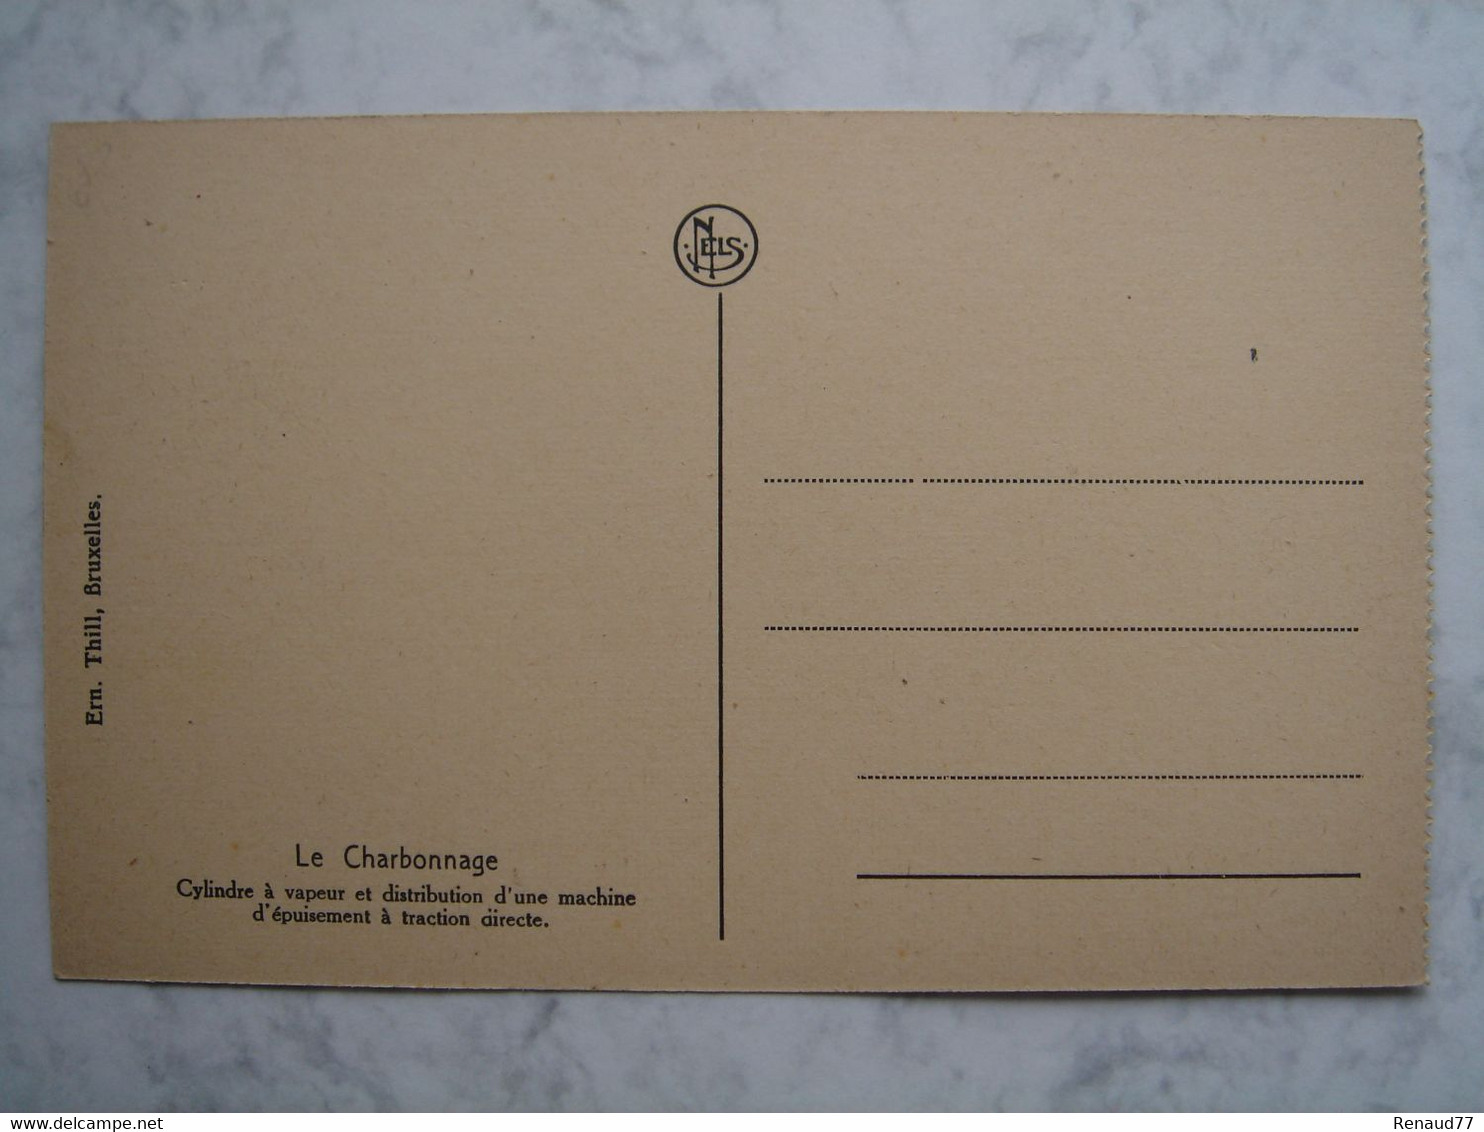 Le Charbonnage - Bascoup - Lot 11 Cartes - Provient surement d'un carnet